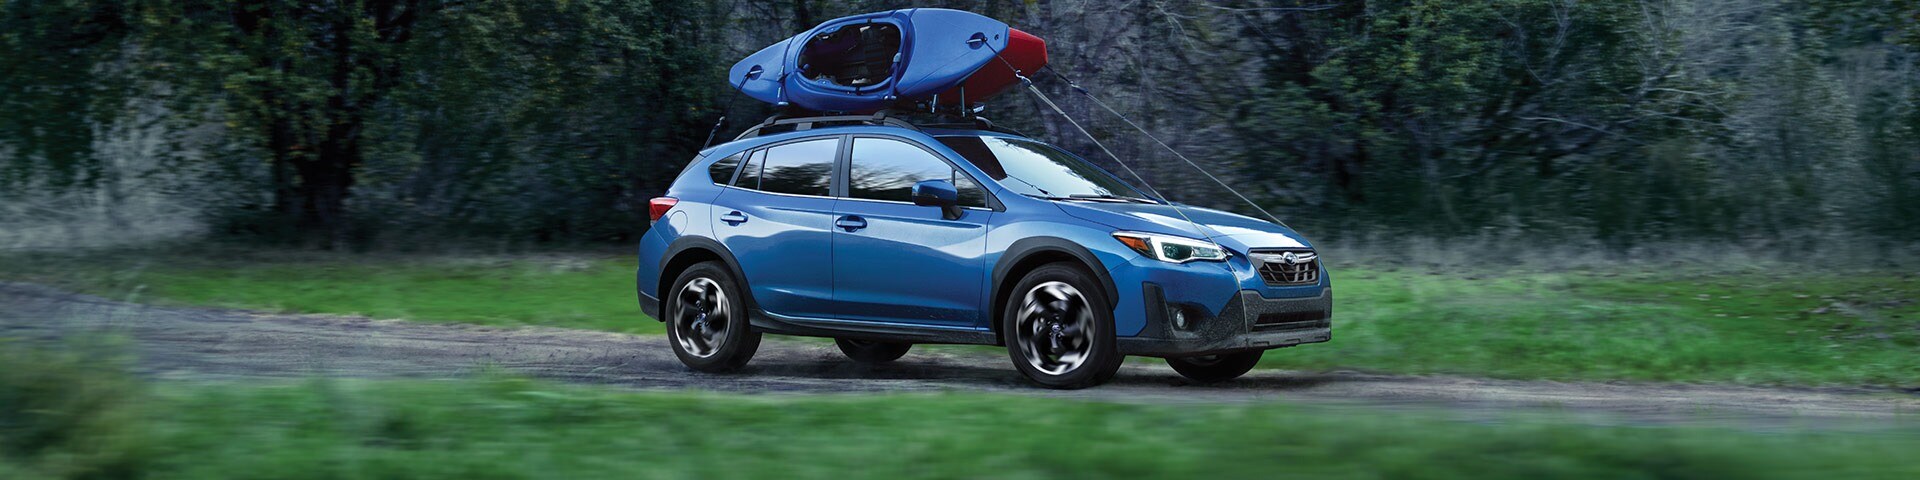 Explore the Capable New 2021 Subaru Crosstrek at Groove Subaru.